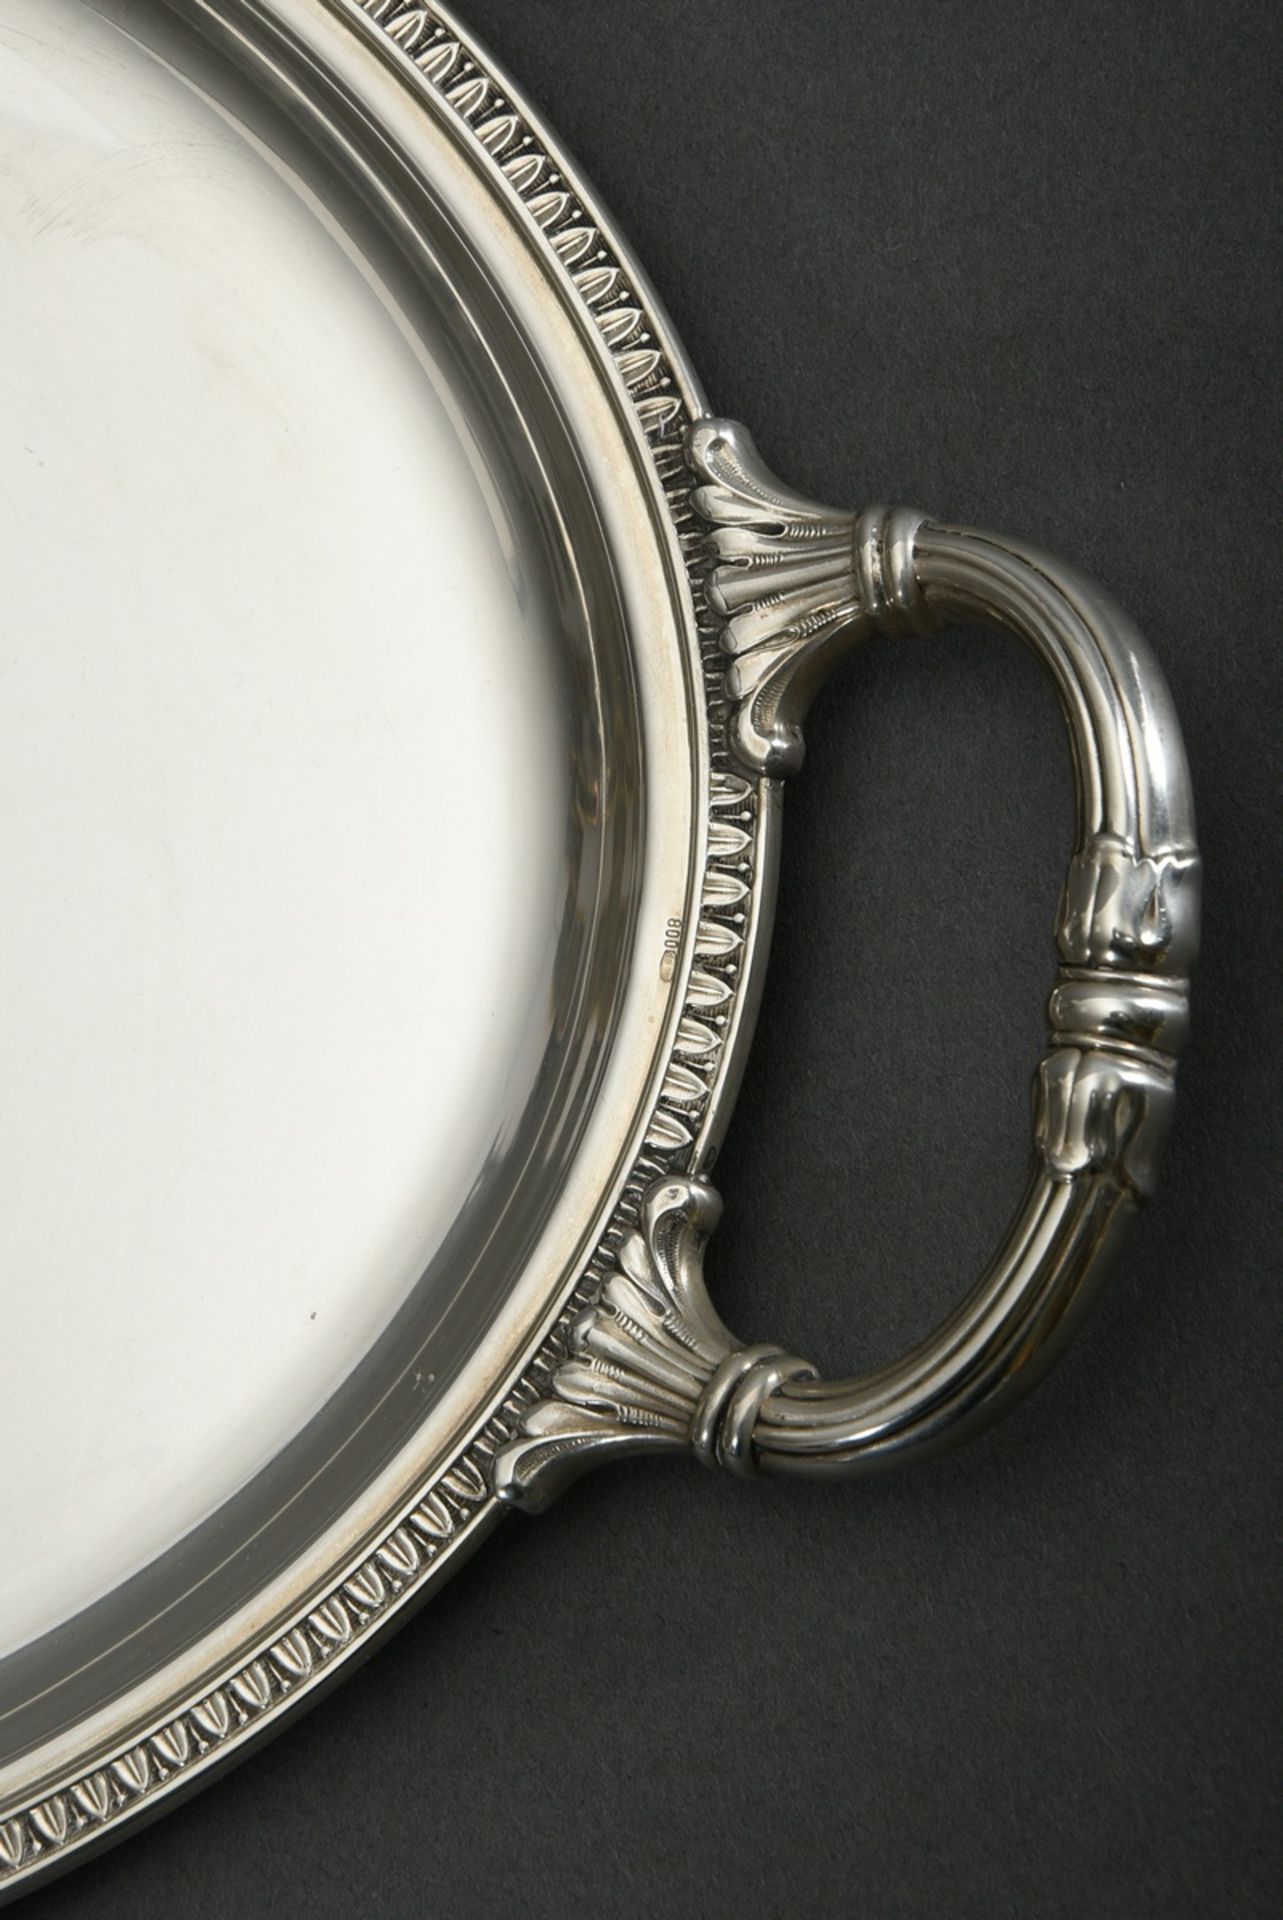 Ovales Tablett in klassischer Façon mit Reliefrand und -griffen, Silber 800, 525g, 41,6x24,6cm, lei - Bild 2 aus 3